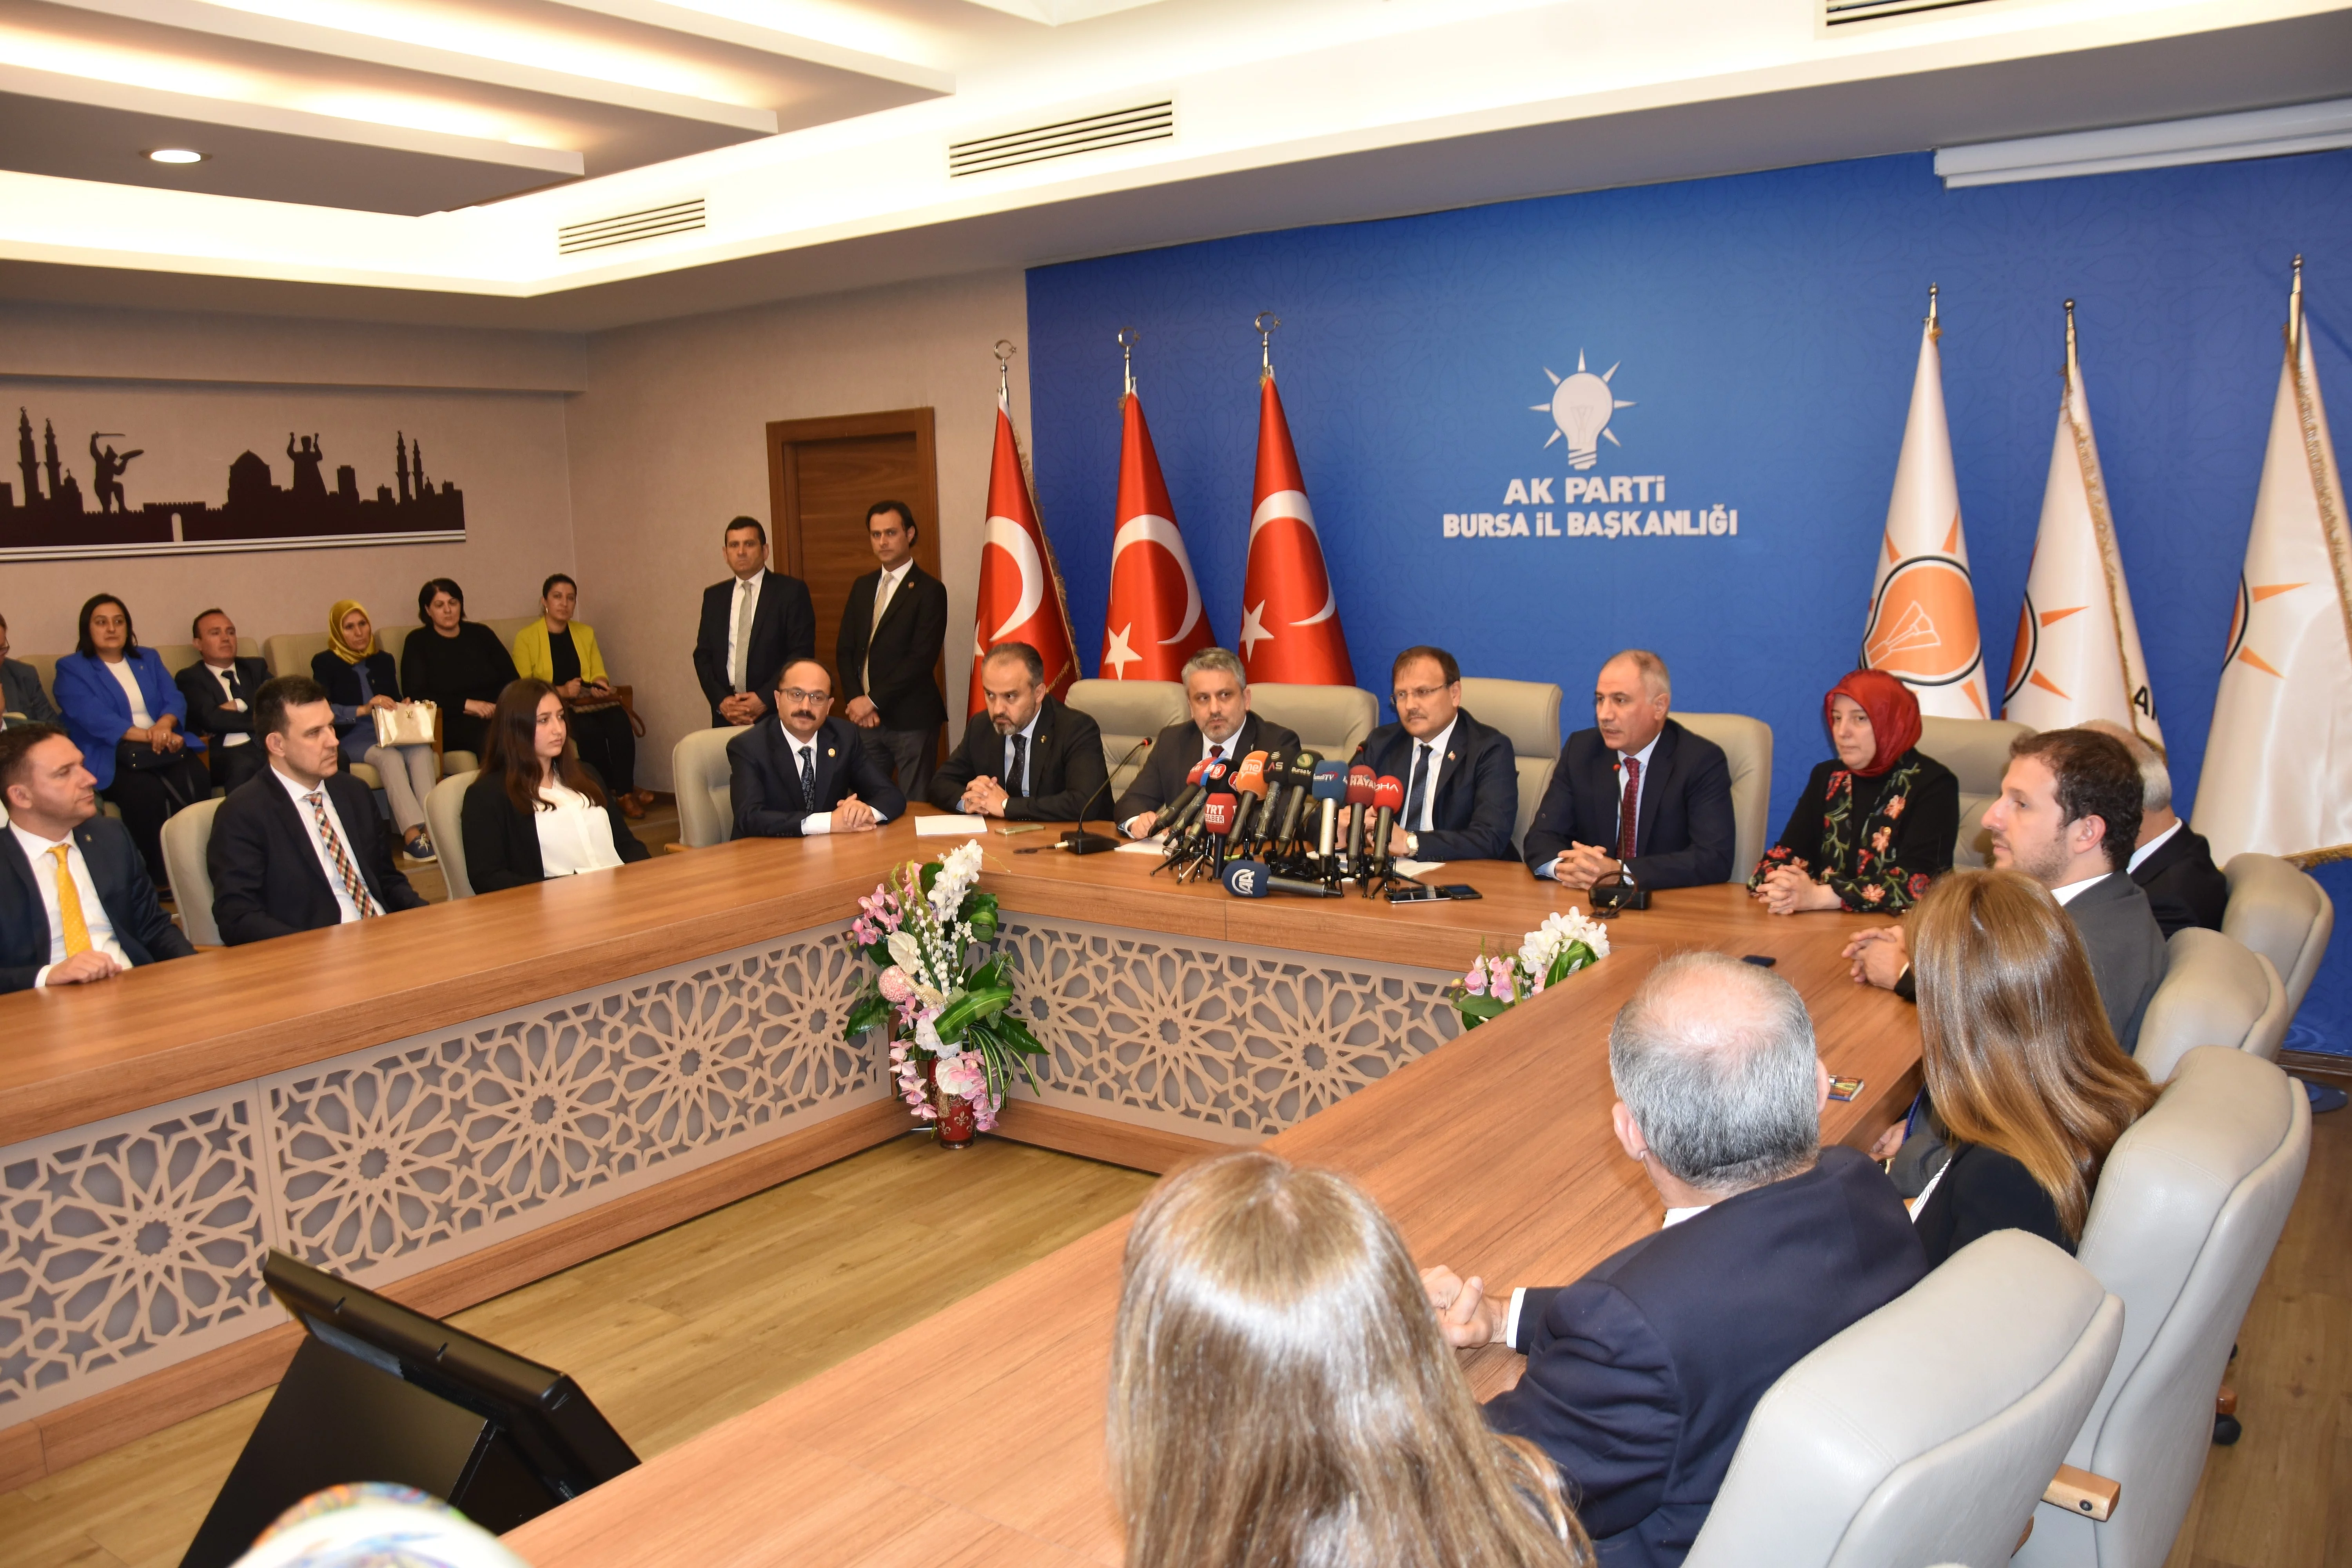 Başbakan Yardımcısı Çavuşoğlu: "25 Haziran sabahı Türkiye’de güven ve istikrar daha da güçlenecektir"